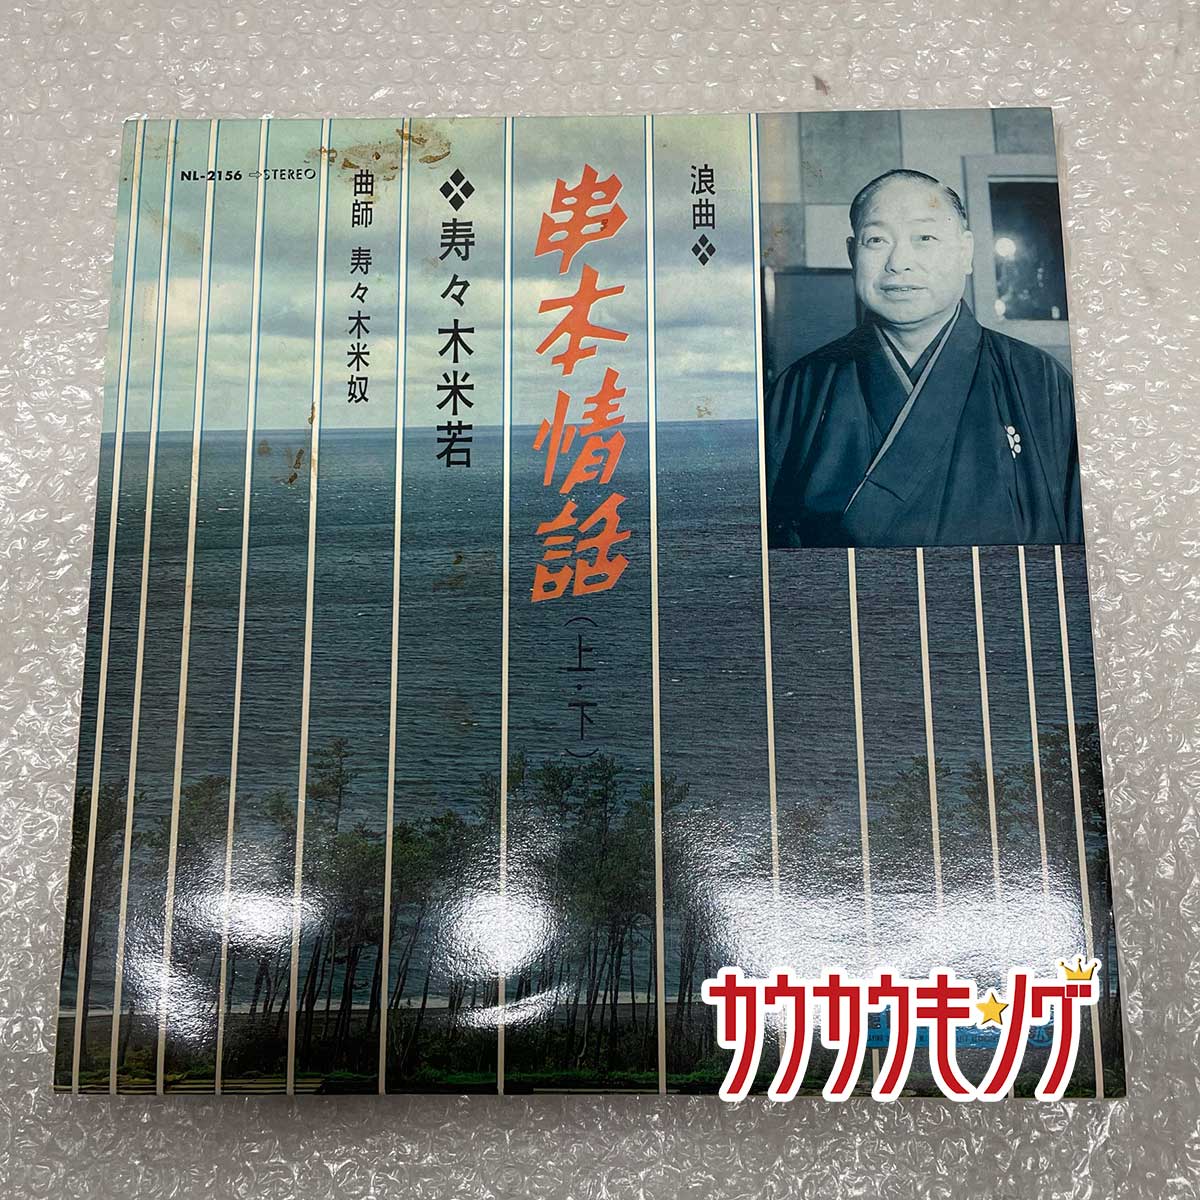 【中古】LP 「浪曲 串物物語」 寿々木米若 レコード NL-2156